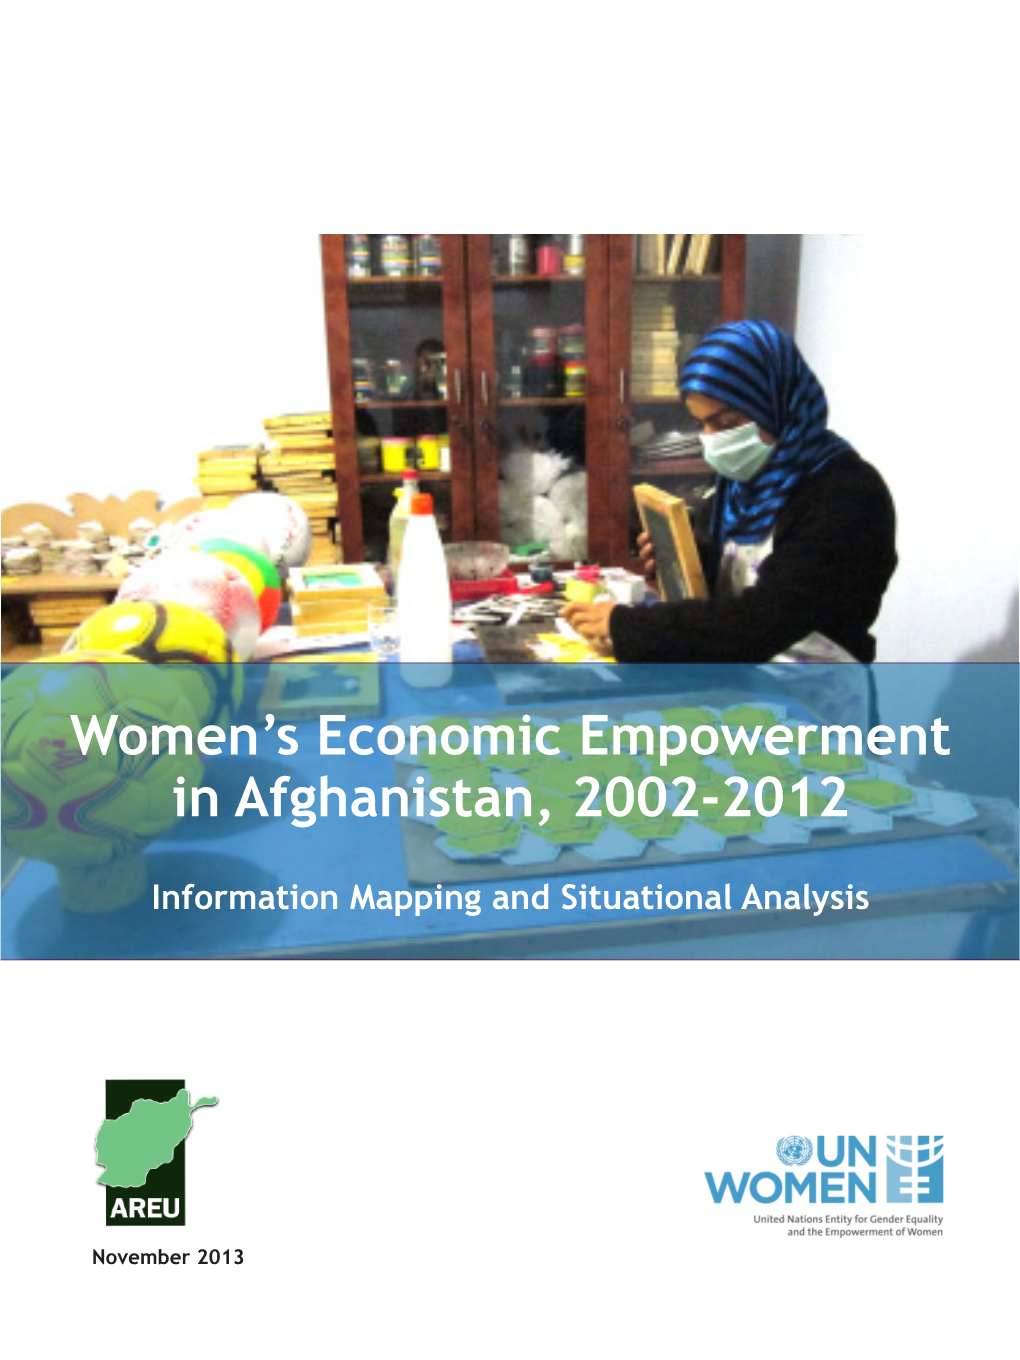 Women's Economic Empowerment in Afghanistan, 2002-2012